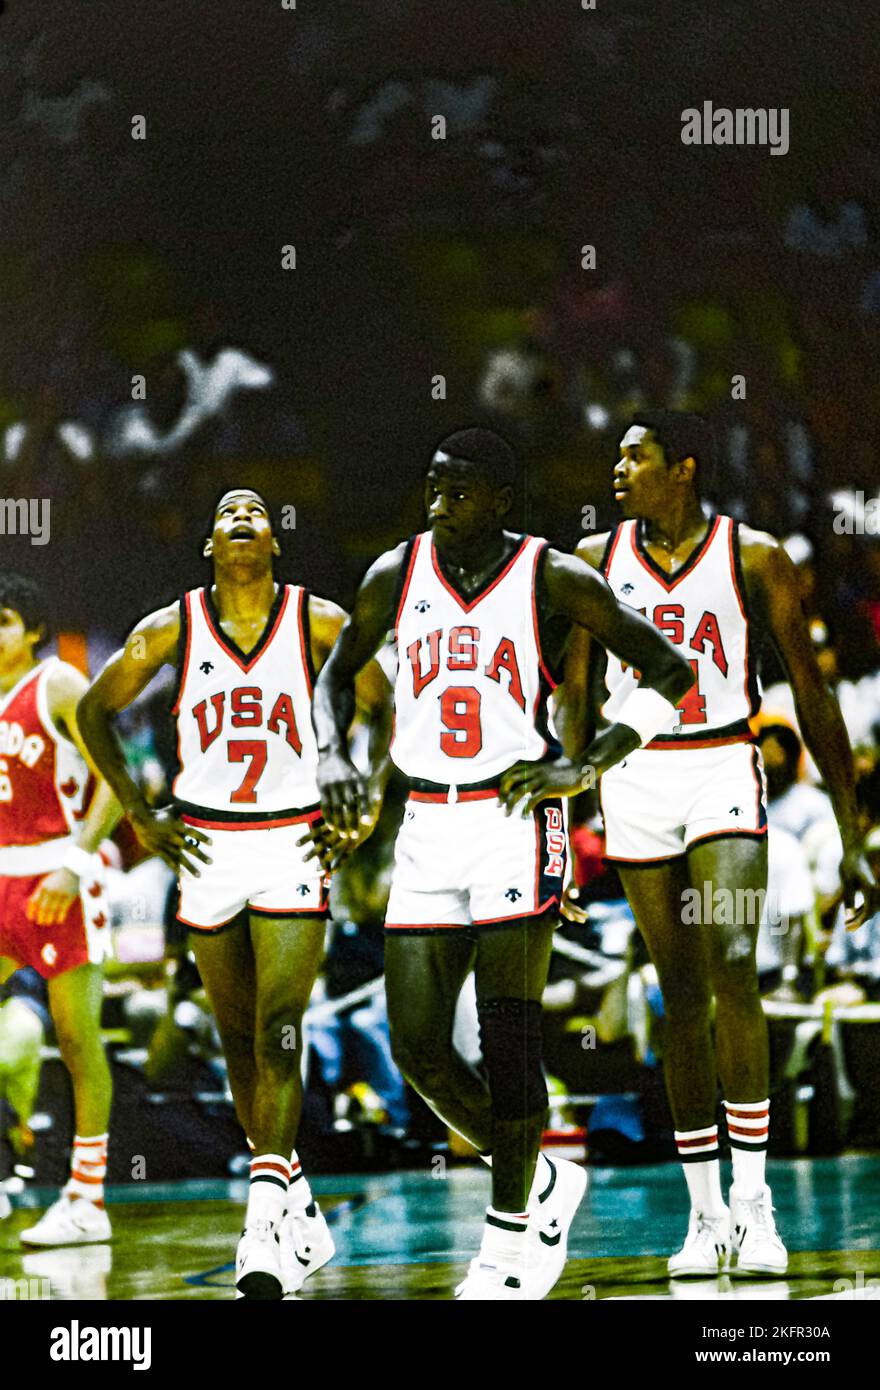 Michael Jordan (États-Unis) en compétition aux Jeux Olympiques d'été de 1984. Banque D'Images